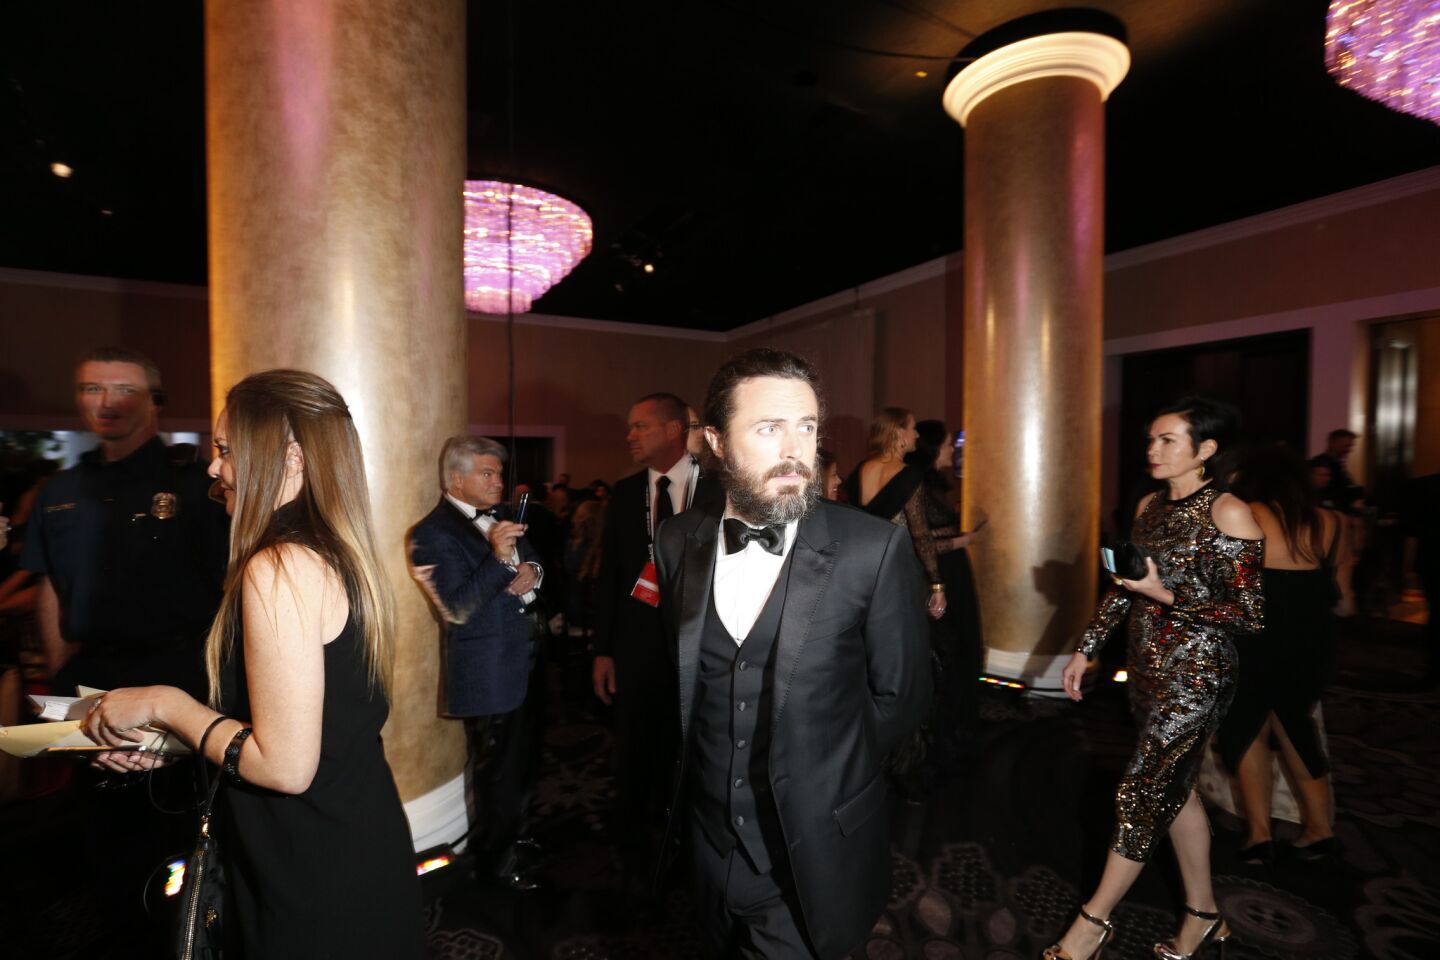 Golden Globes: Inside the ballroom